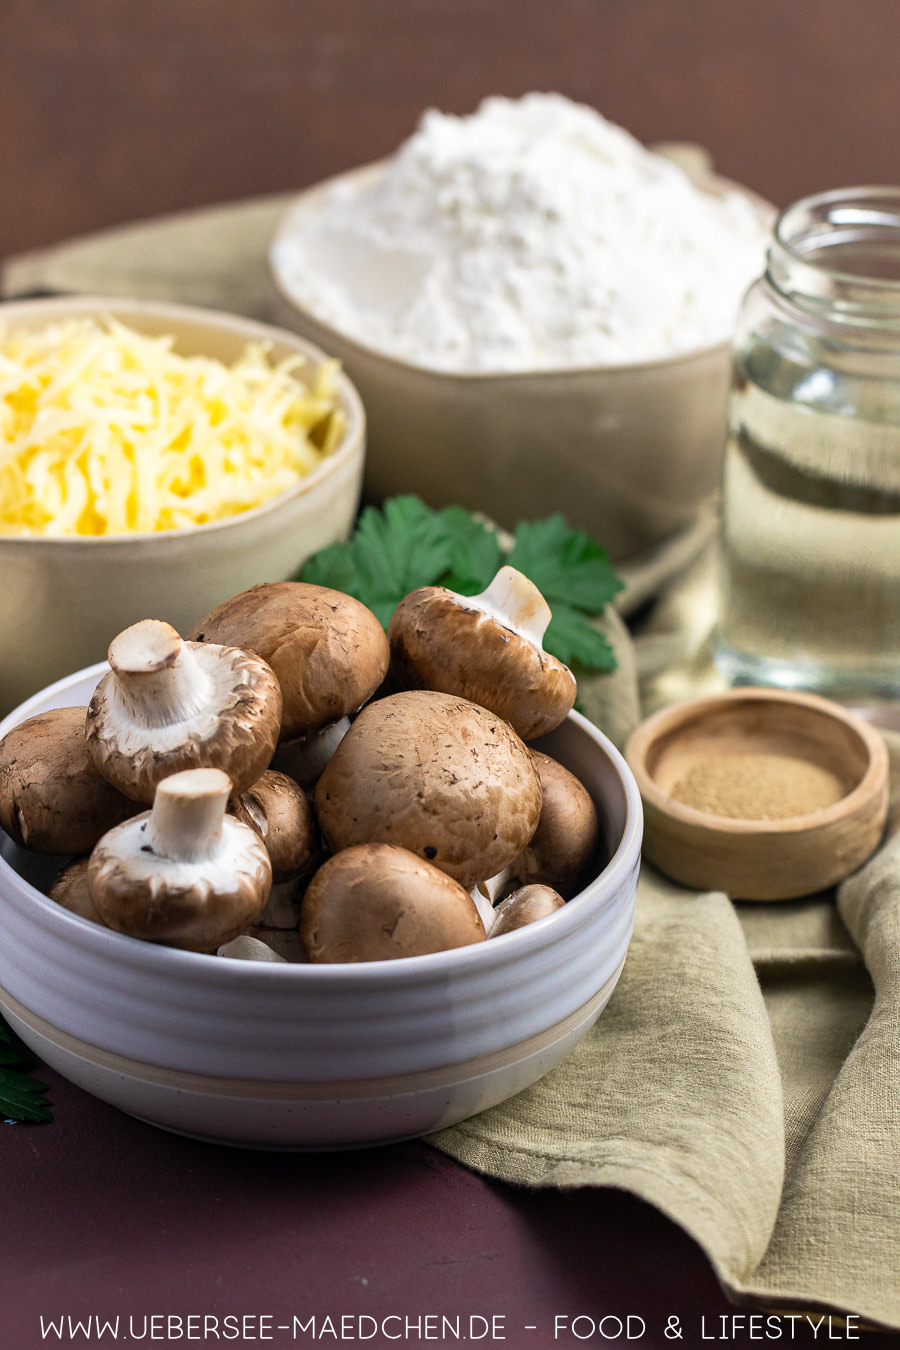 Pilze Champignons sind eine entscheidende Zutat für vegetarisches Handbrot